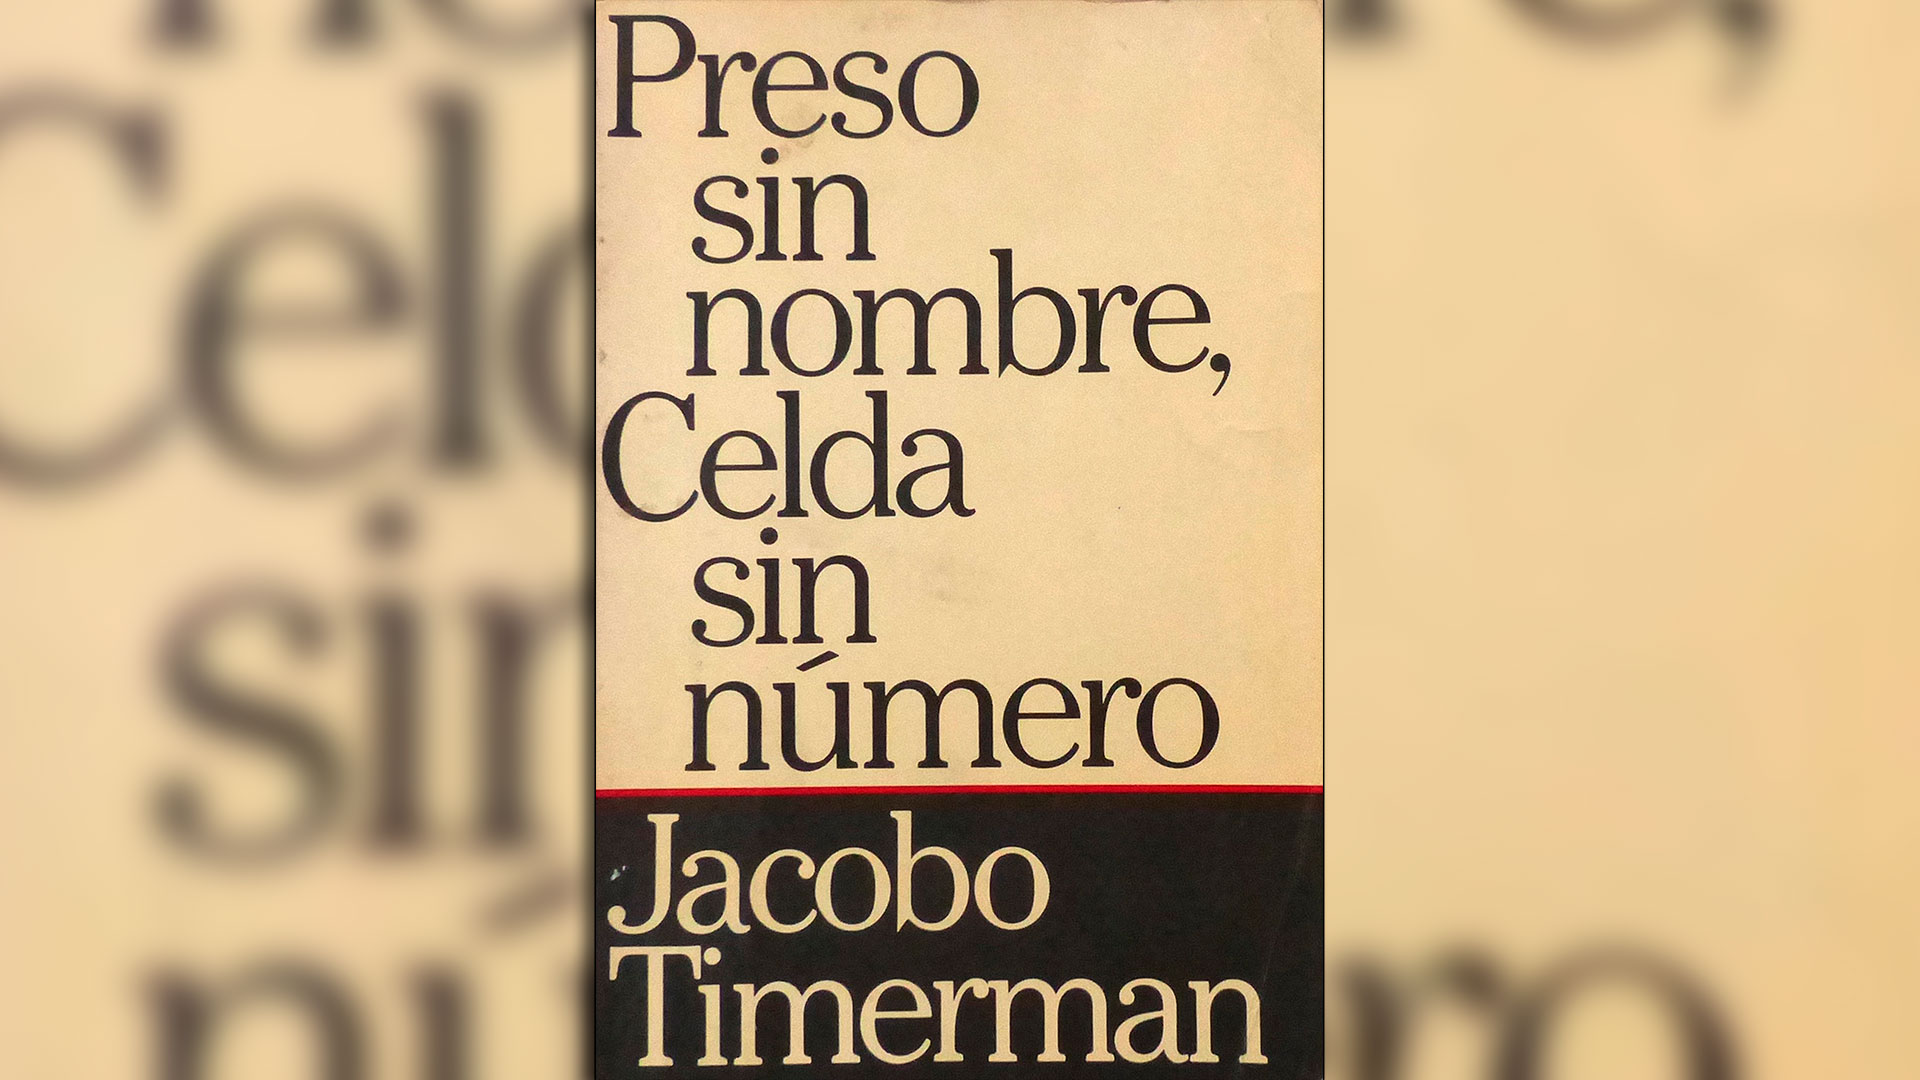 Preso sin nombre, celda sin número, de Jacobo Timerman